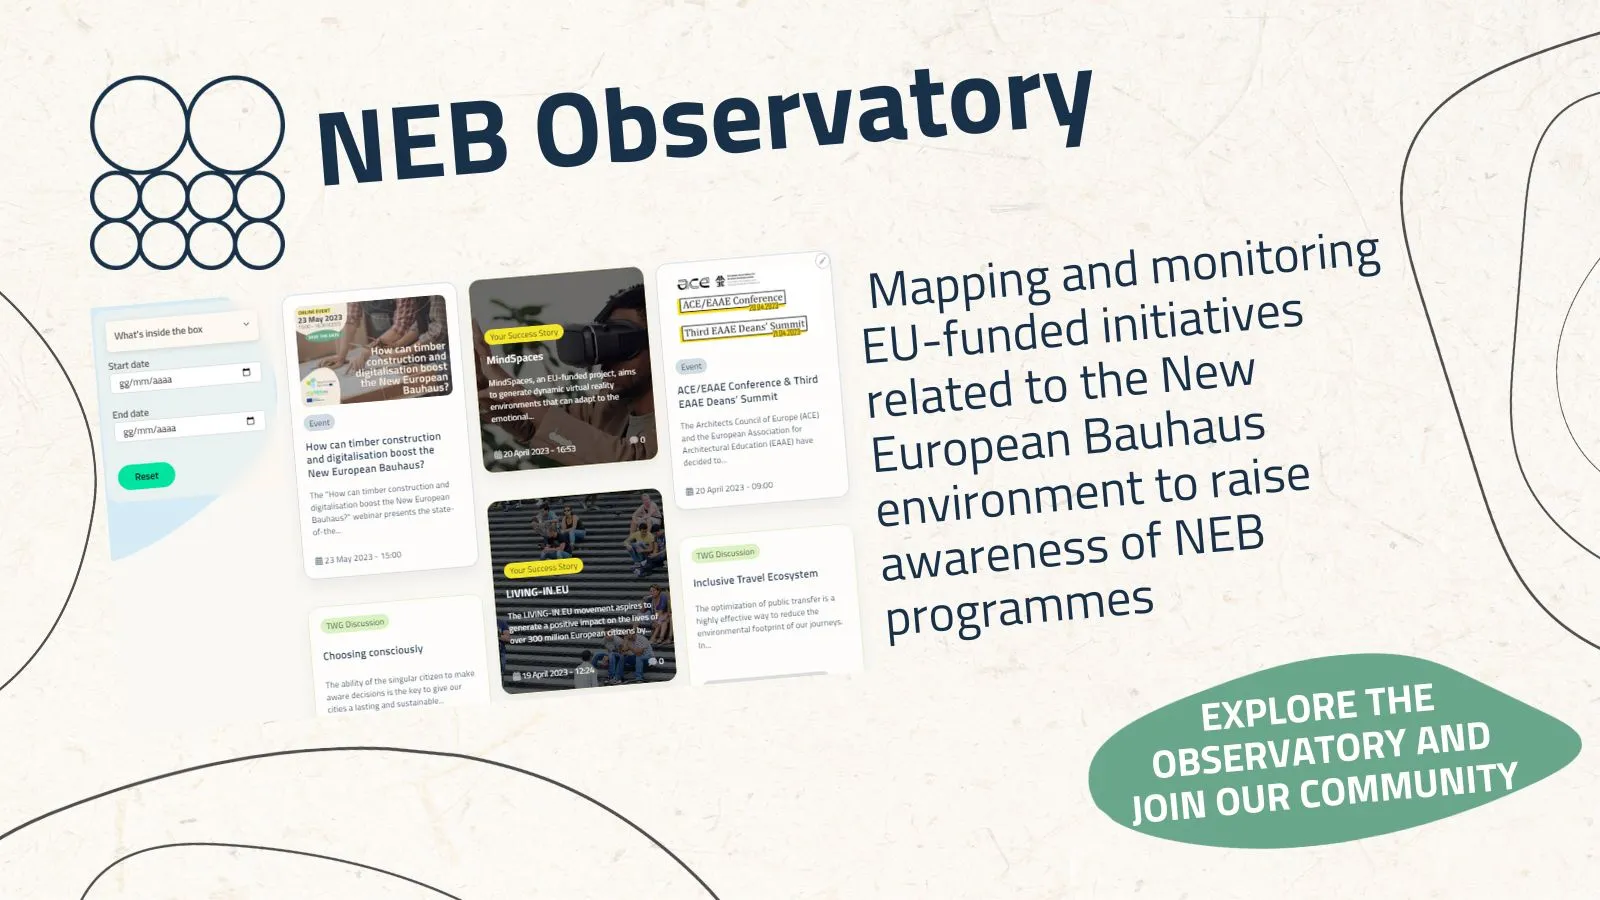 NEB Observatory